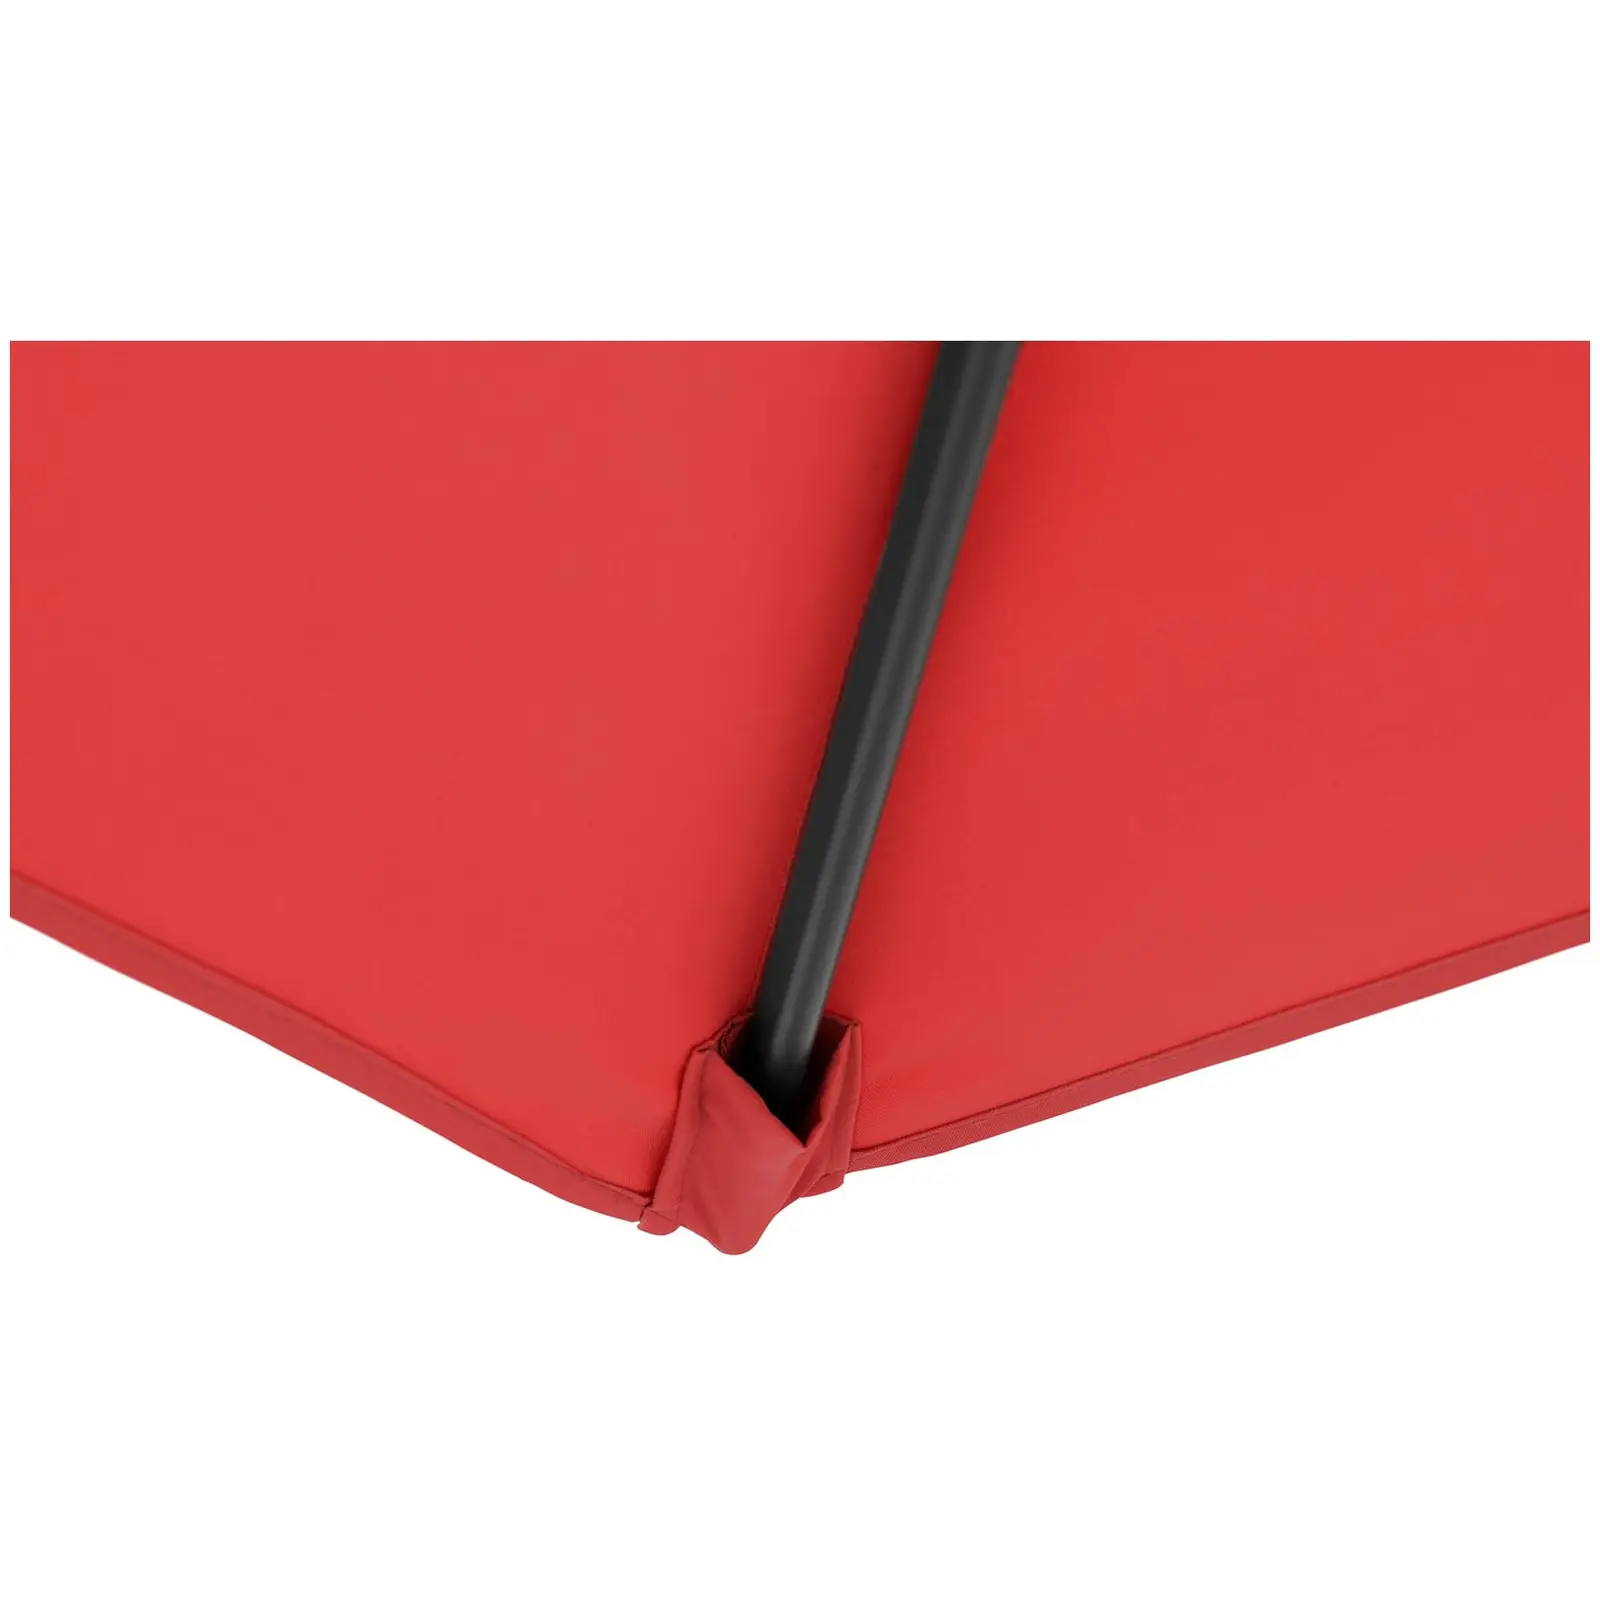 Ombrellone palo centrale grande - Rosso - Esagonale - Ø 270 cm